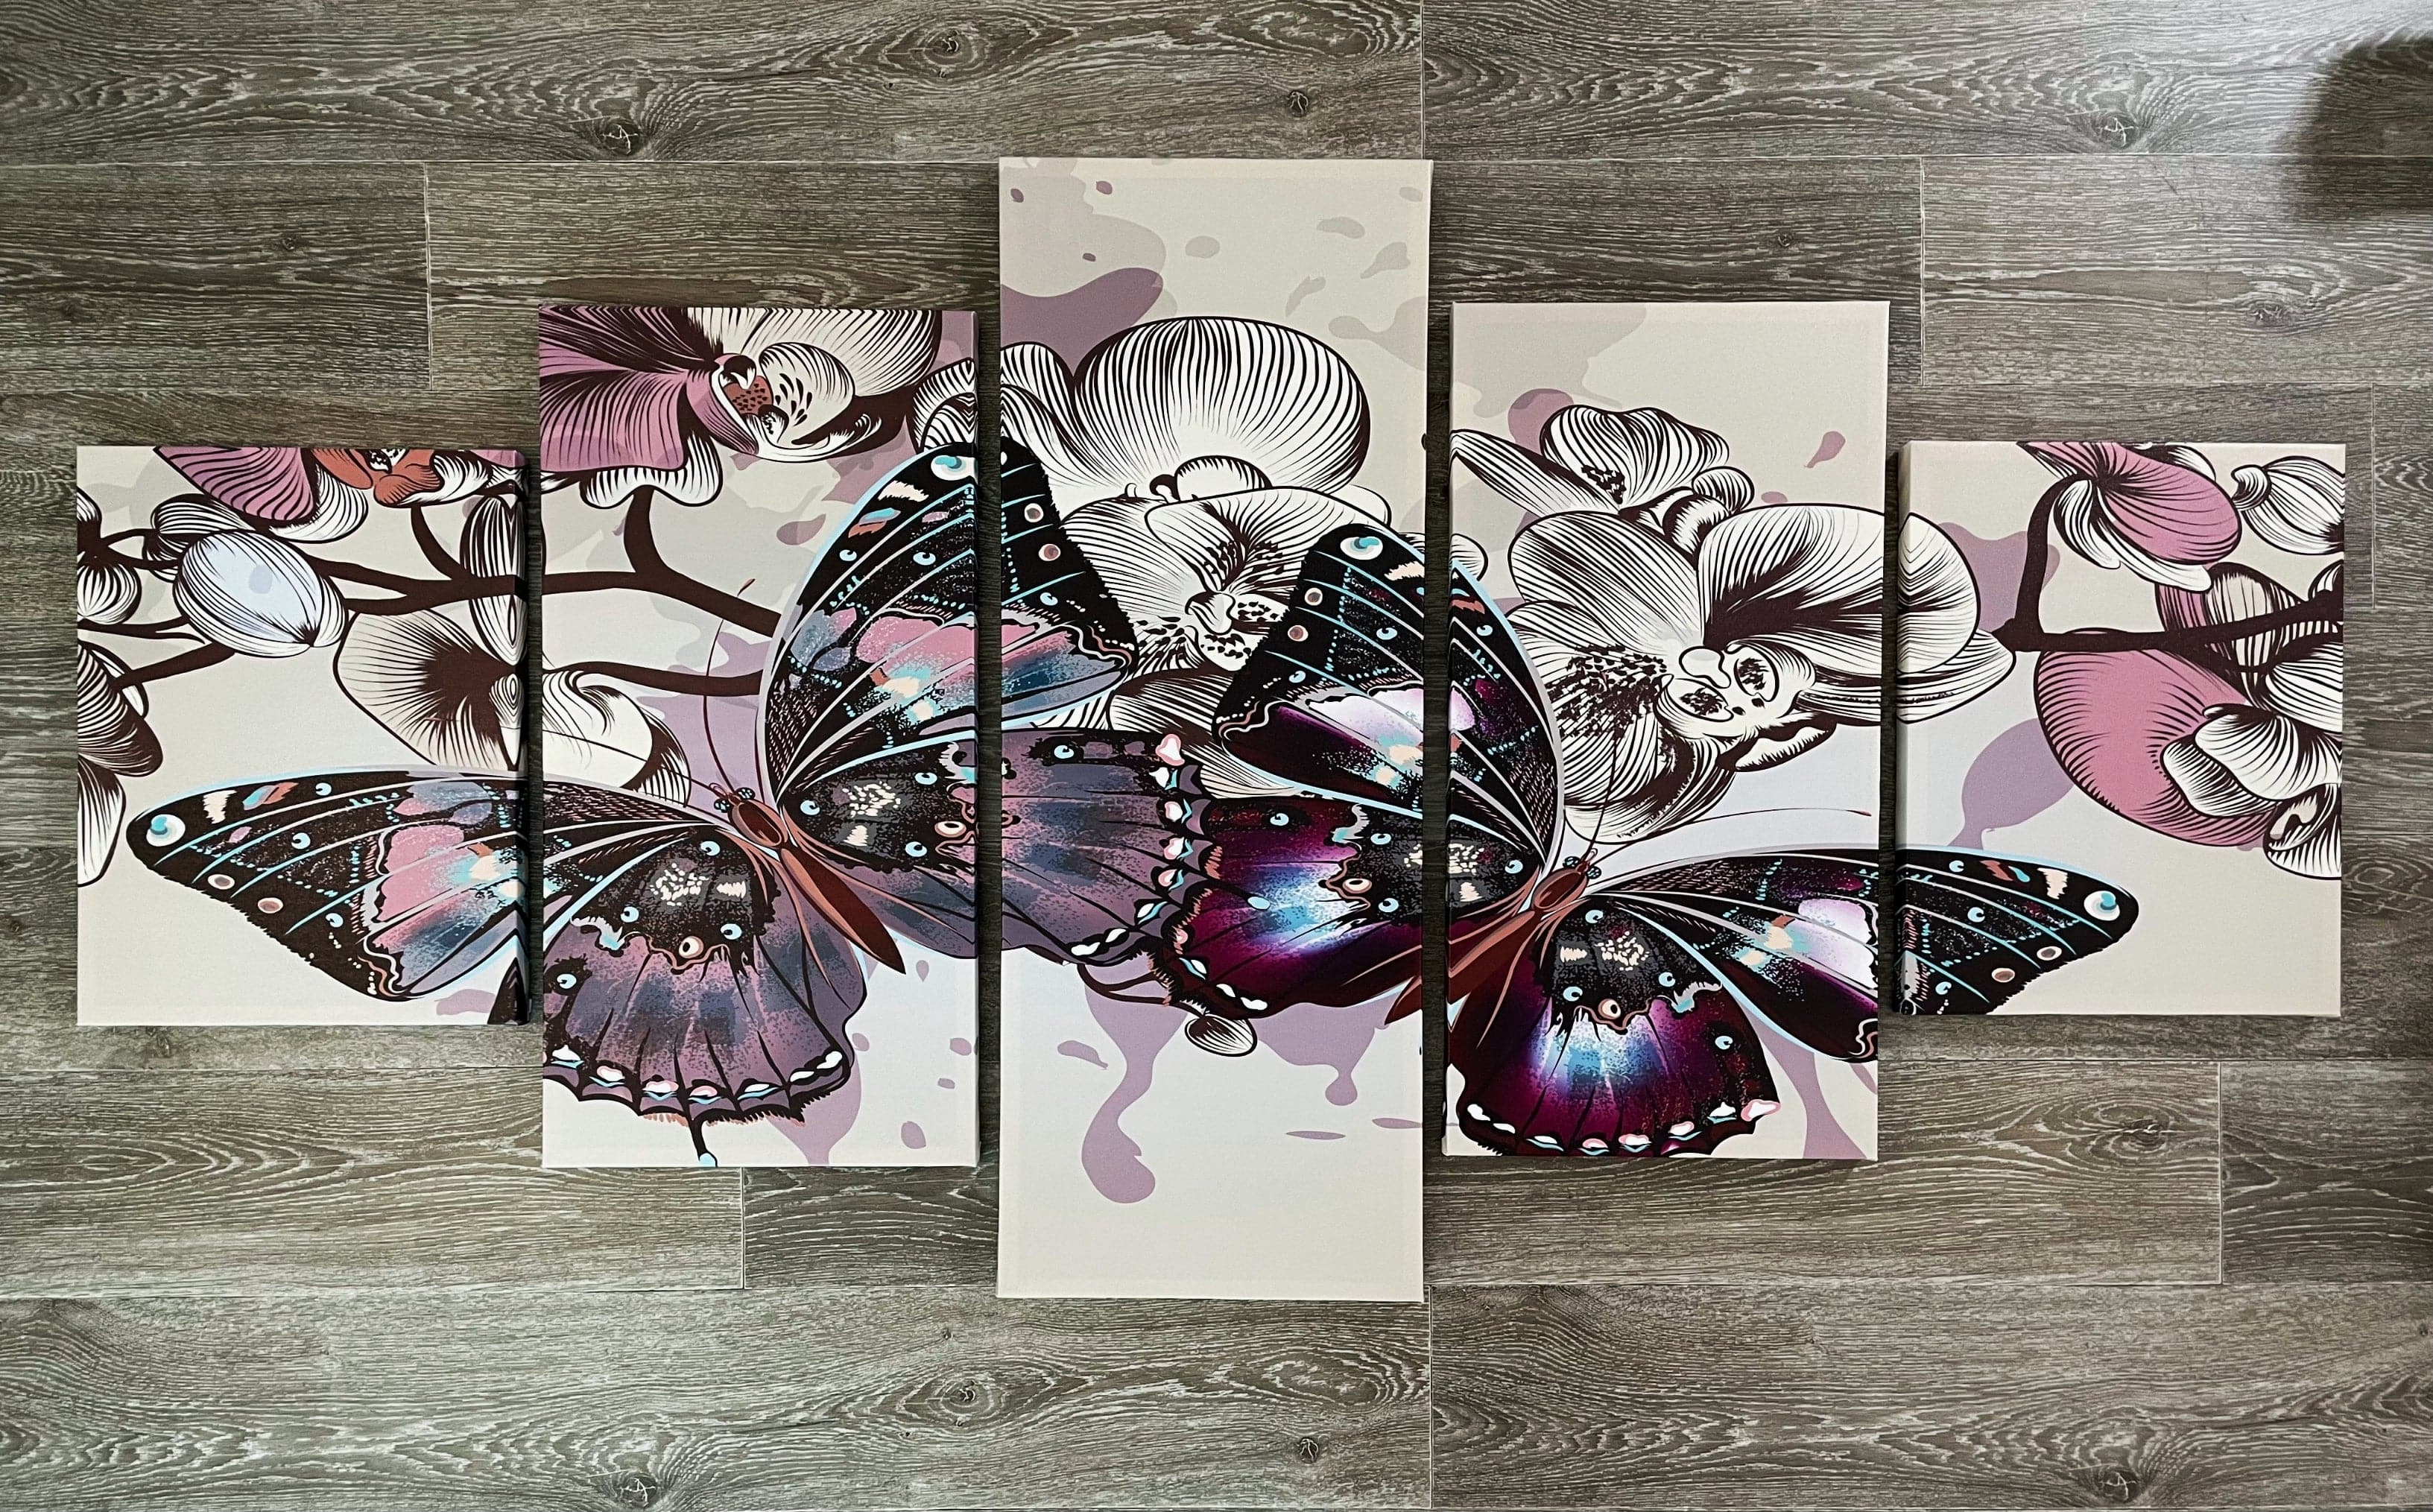 Framed 5 Panels - Butterfly